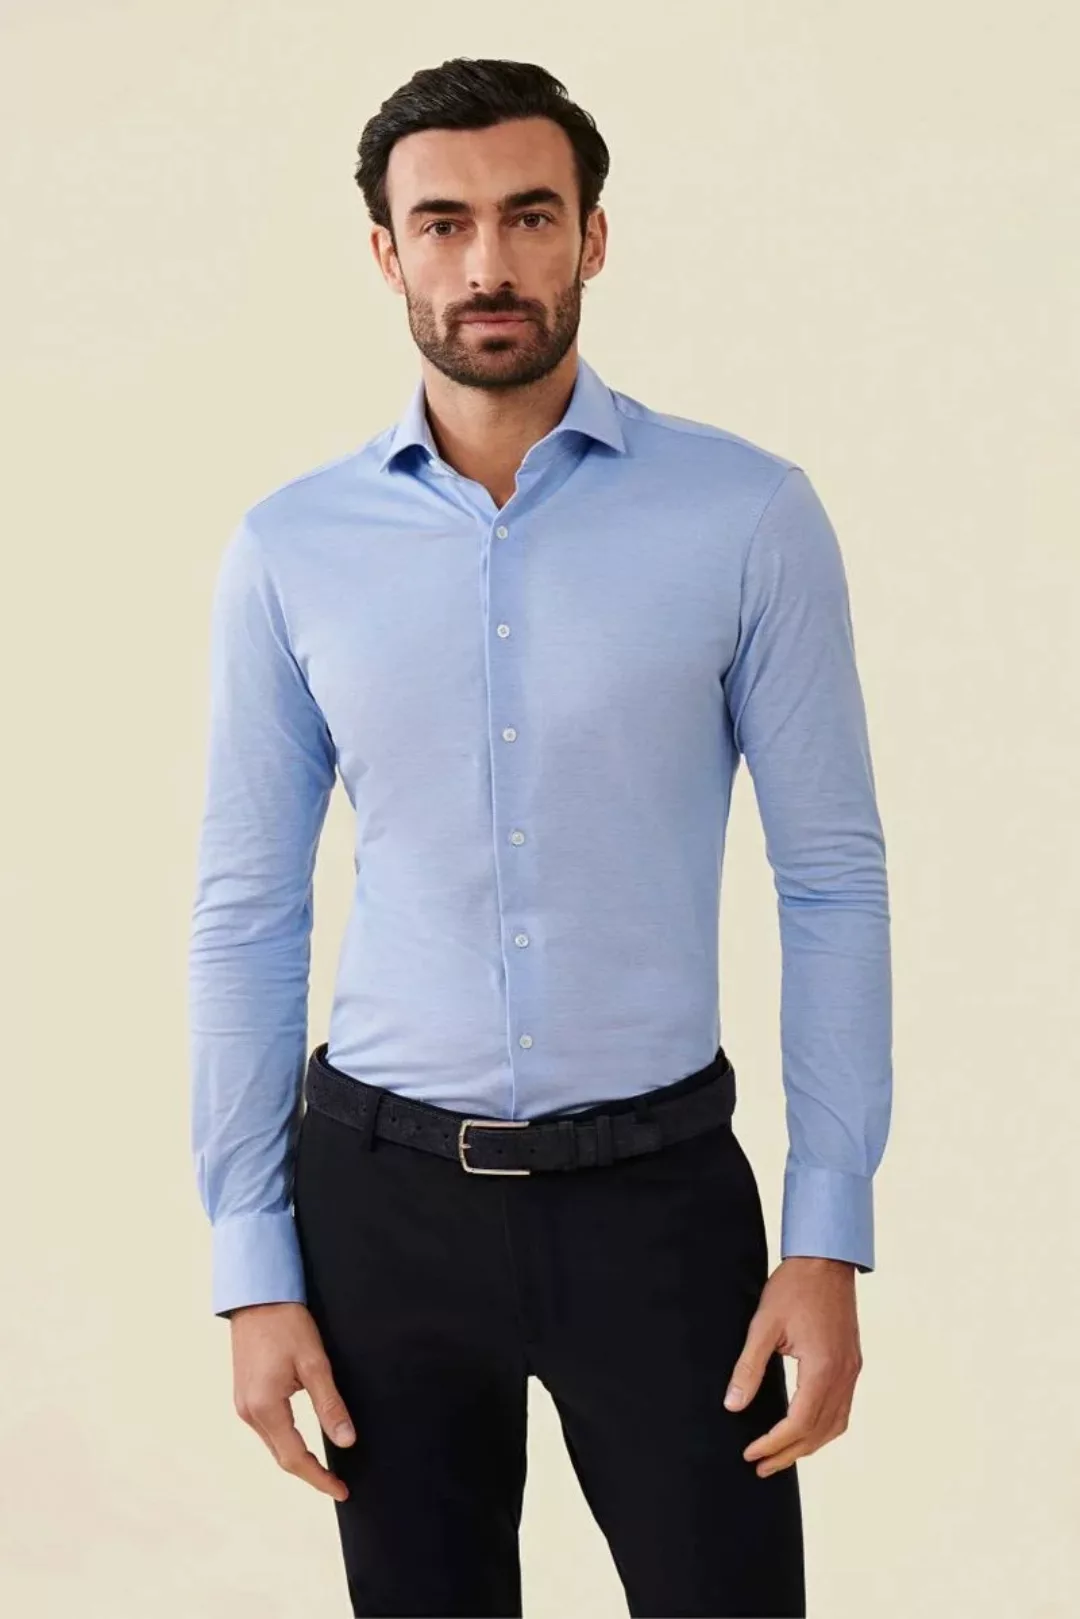 Cavallaro Piqué Hemd Hellblau - Größe 39 günstig online kaufen